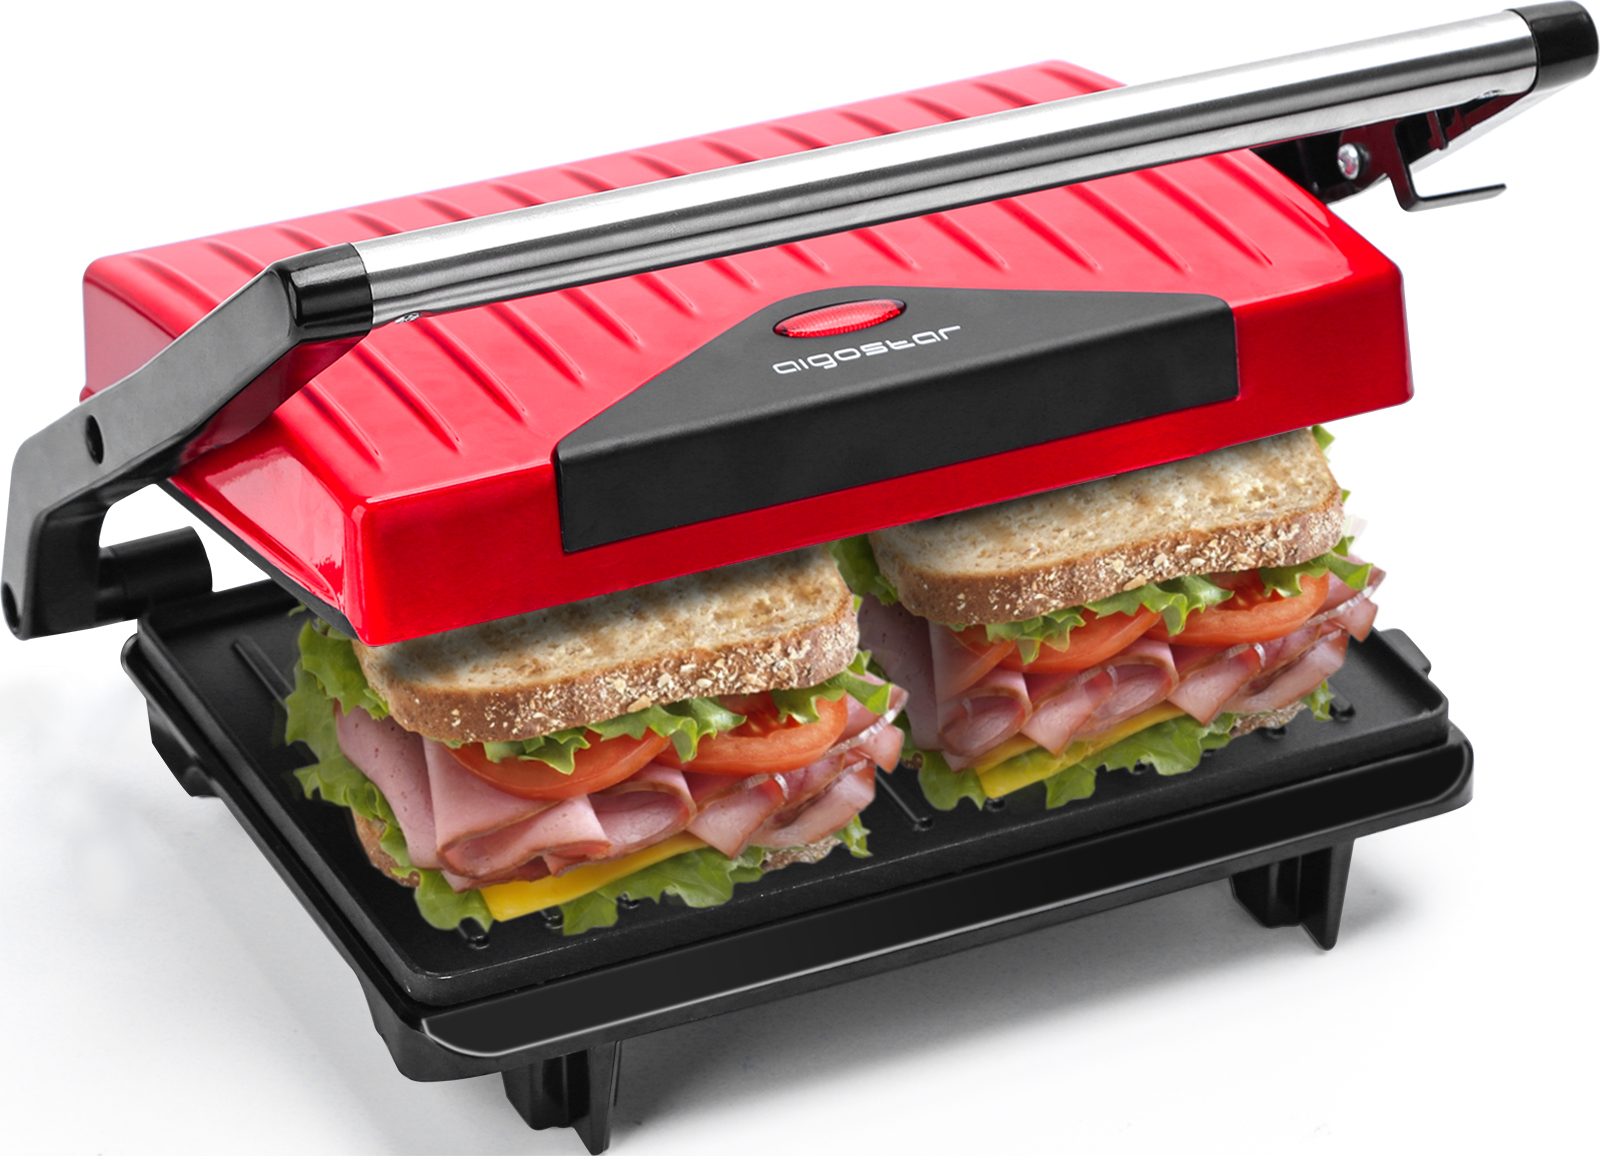 Grill color rojo y negro sandwichera y máquina de panini 700 W de potencia asa de toque frío Libre de BPA parrilla placas antiadherentes Aigostar Warme 30HHH Diseño exclusivo. 